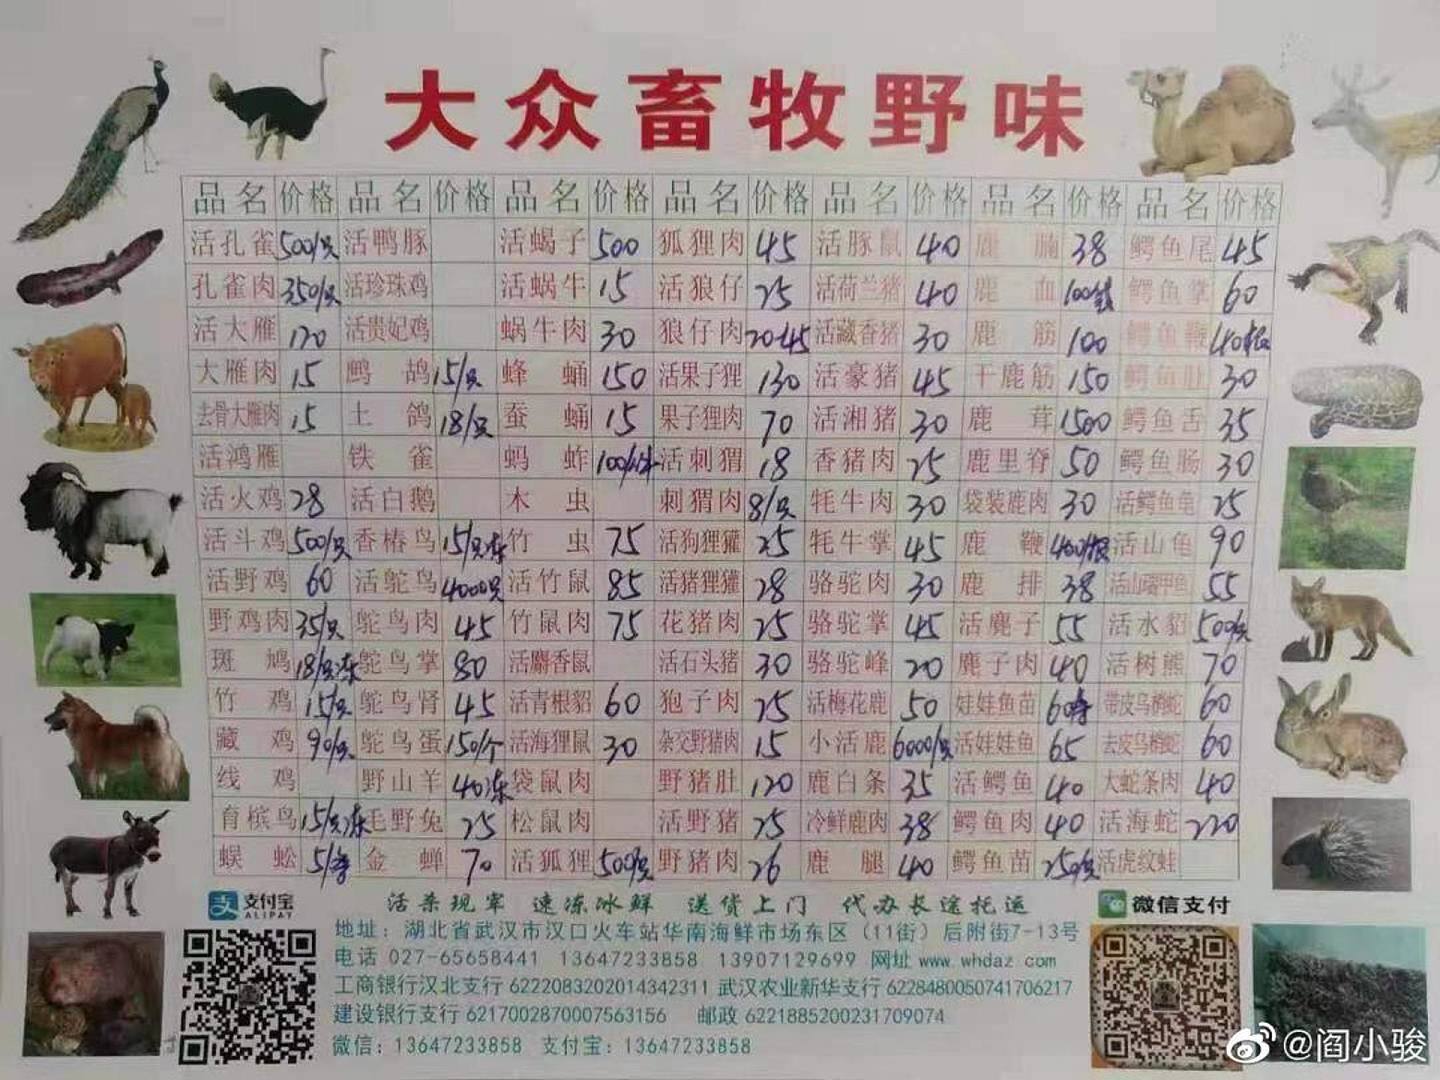 商户「大众畜牧野味」位于武汉华南海鲜市场东区，其价目表显示曾出售大量疑似野生动物。 （微博）